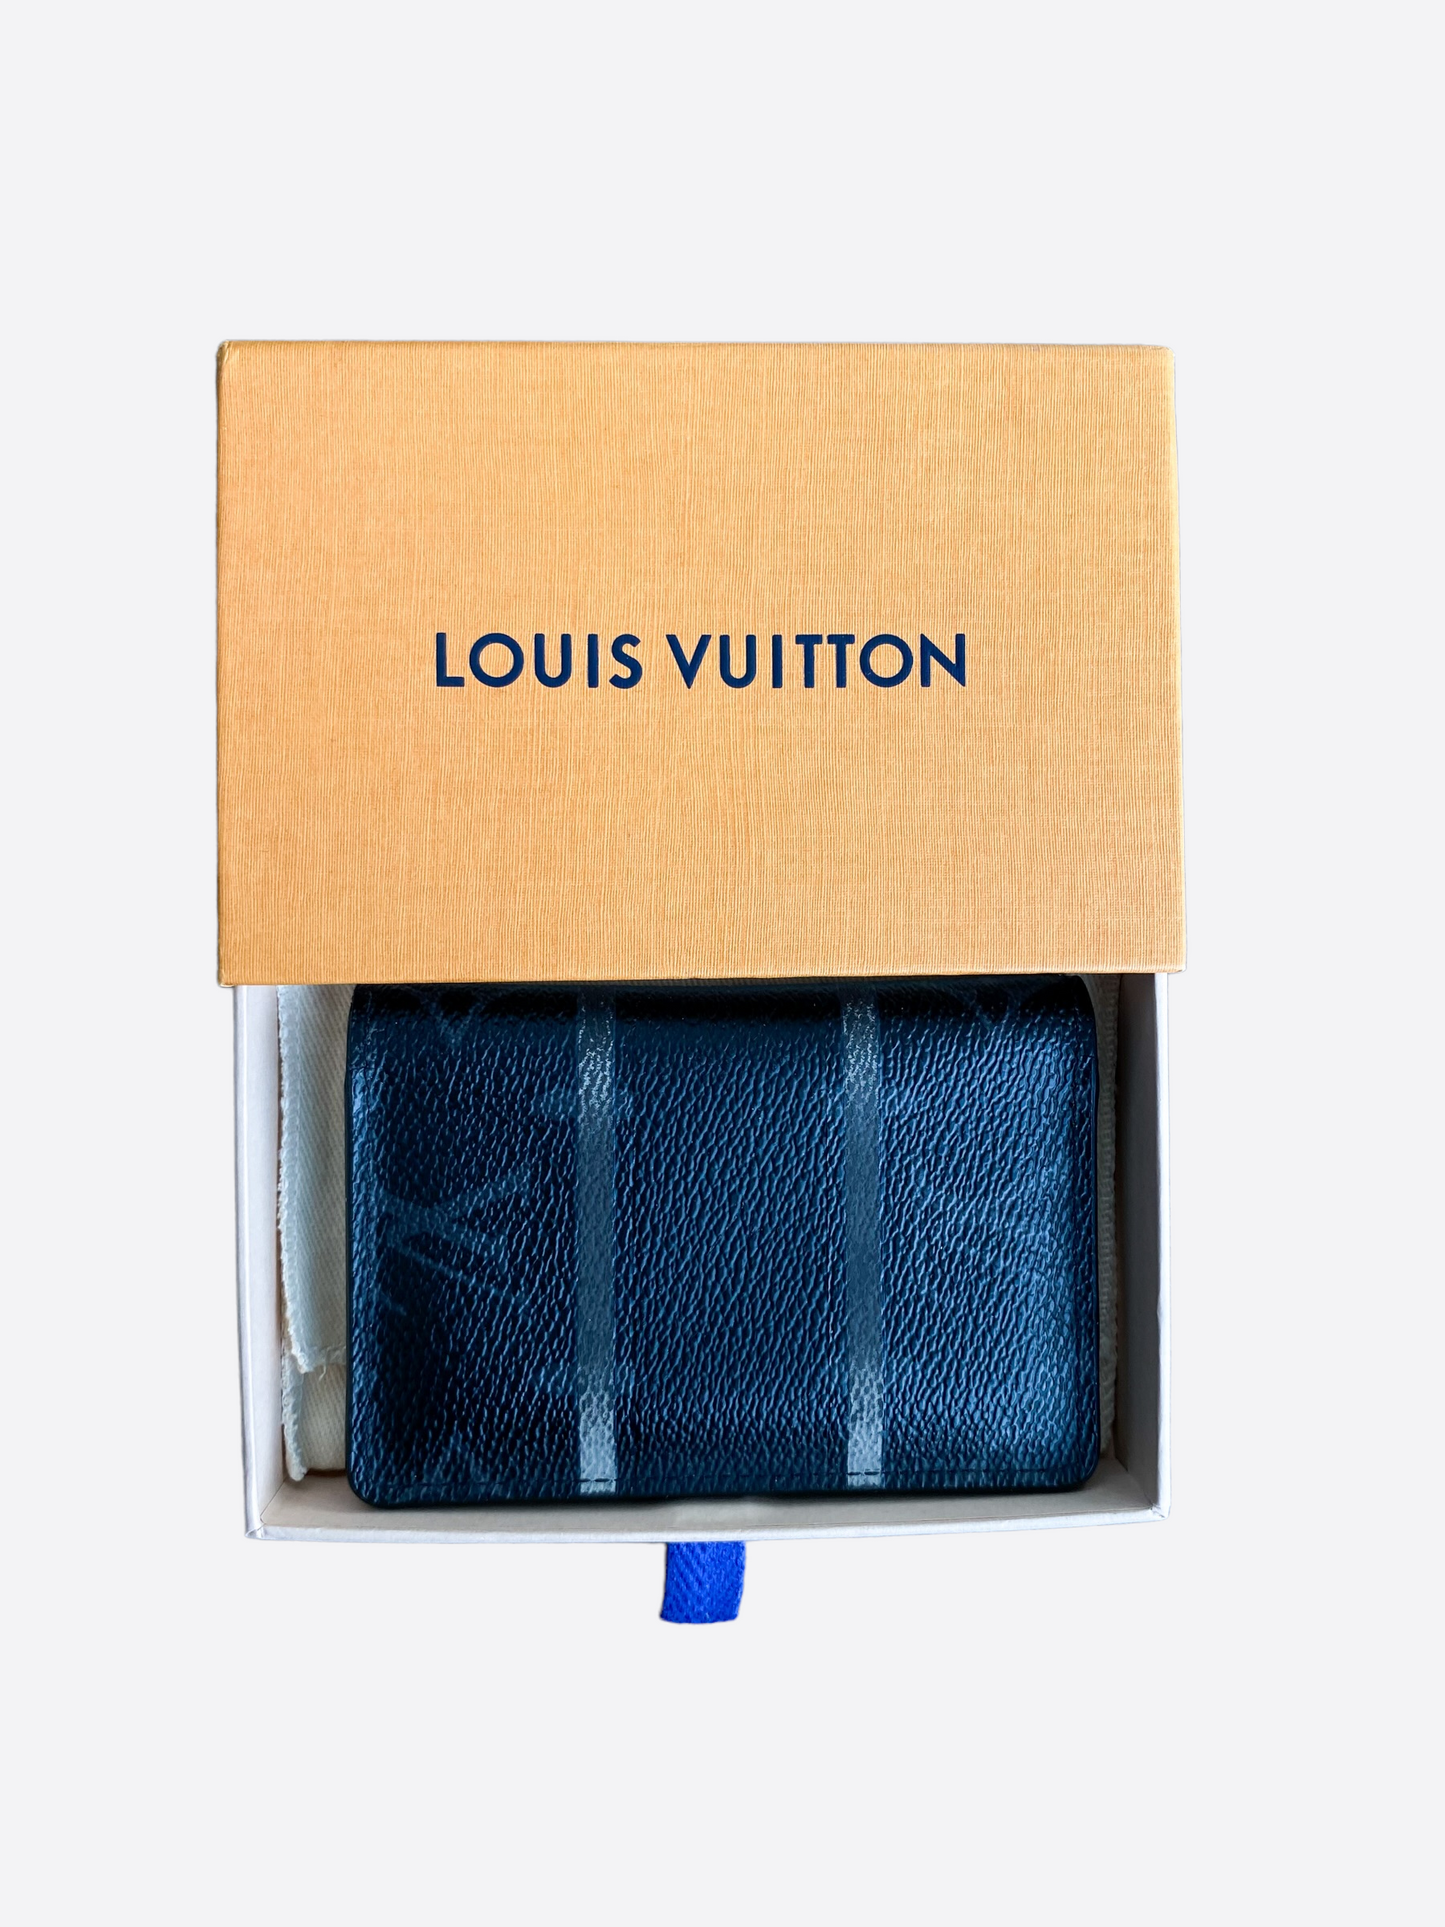 LOUIS VUITTON MONOGRAM ECLIPSE FRAGMENT POCKET ORGANIZER – VLA Luxury